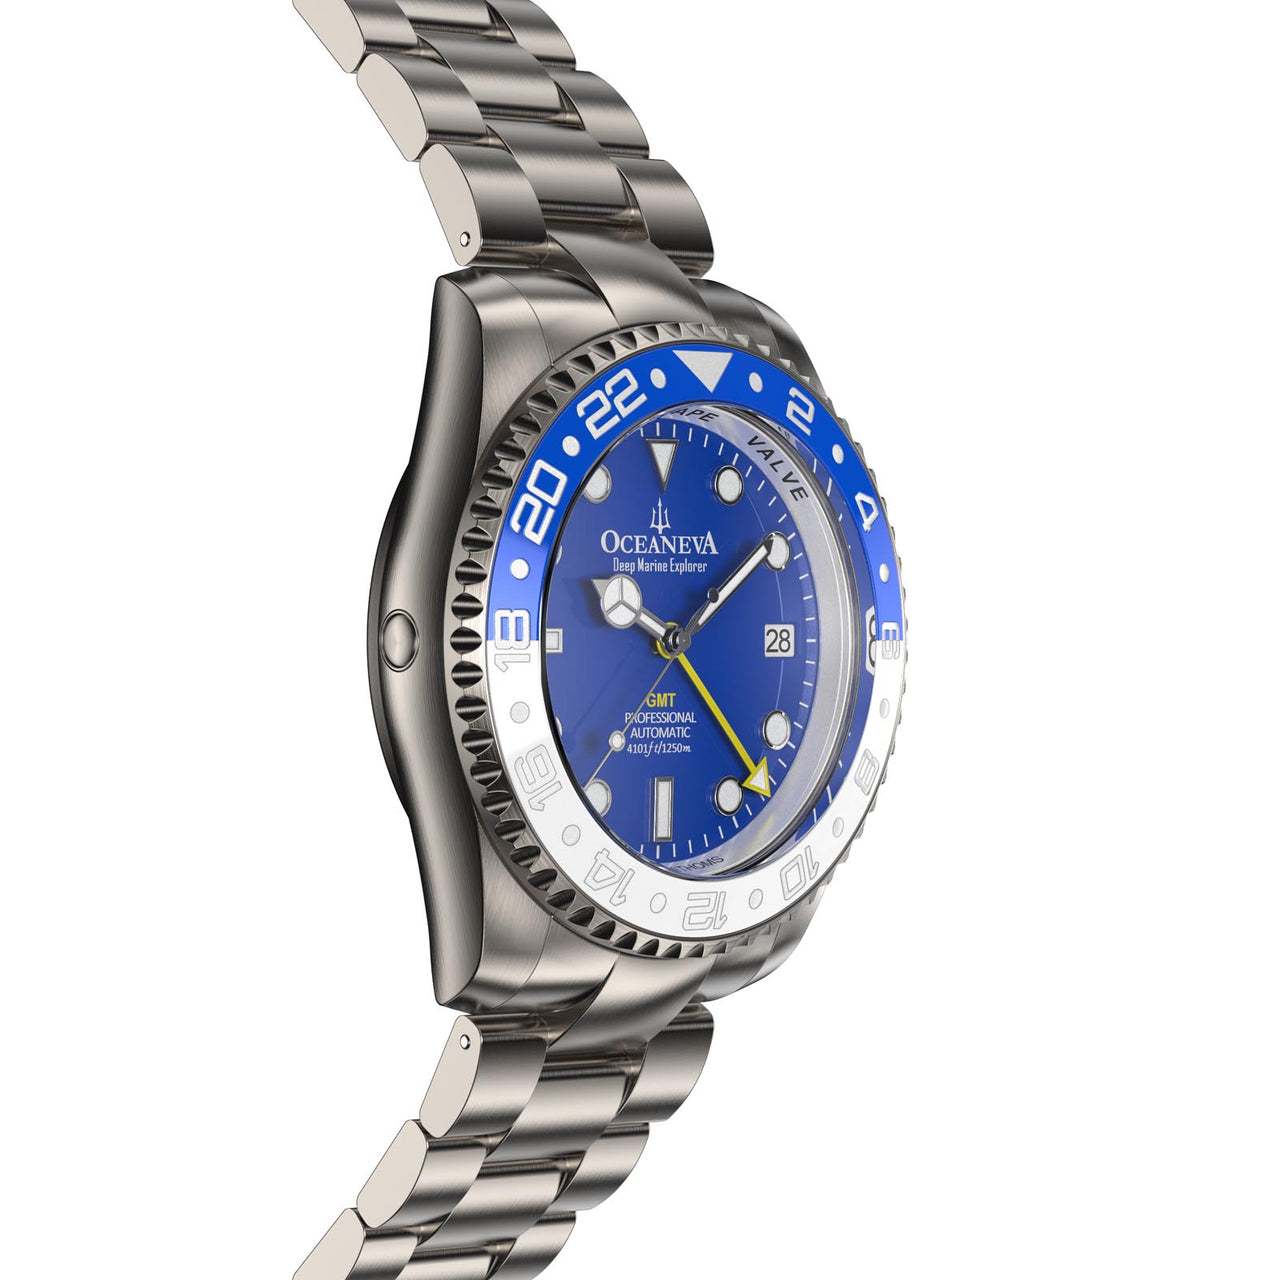 Close-up of Oceaneva Titanium Watch's helium escape valve feature